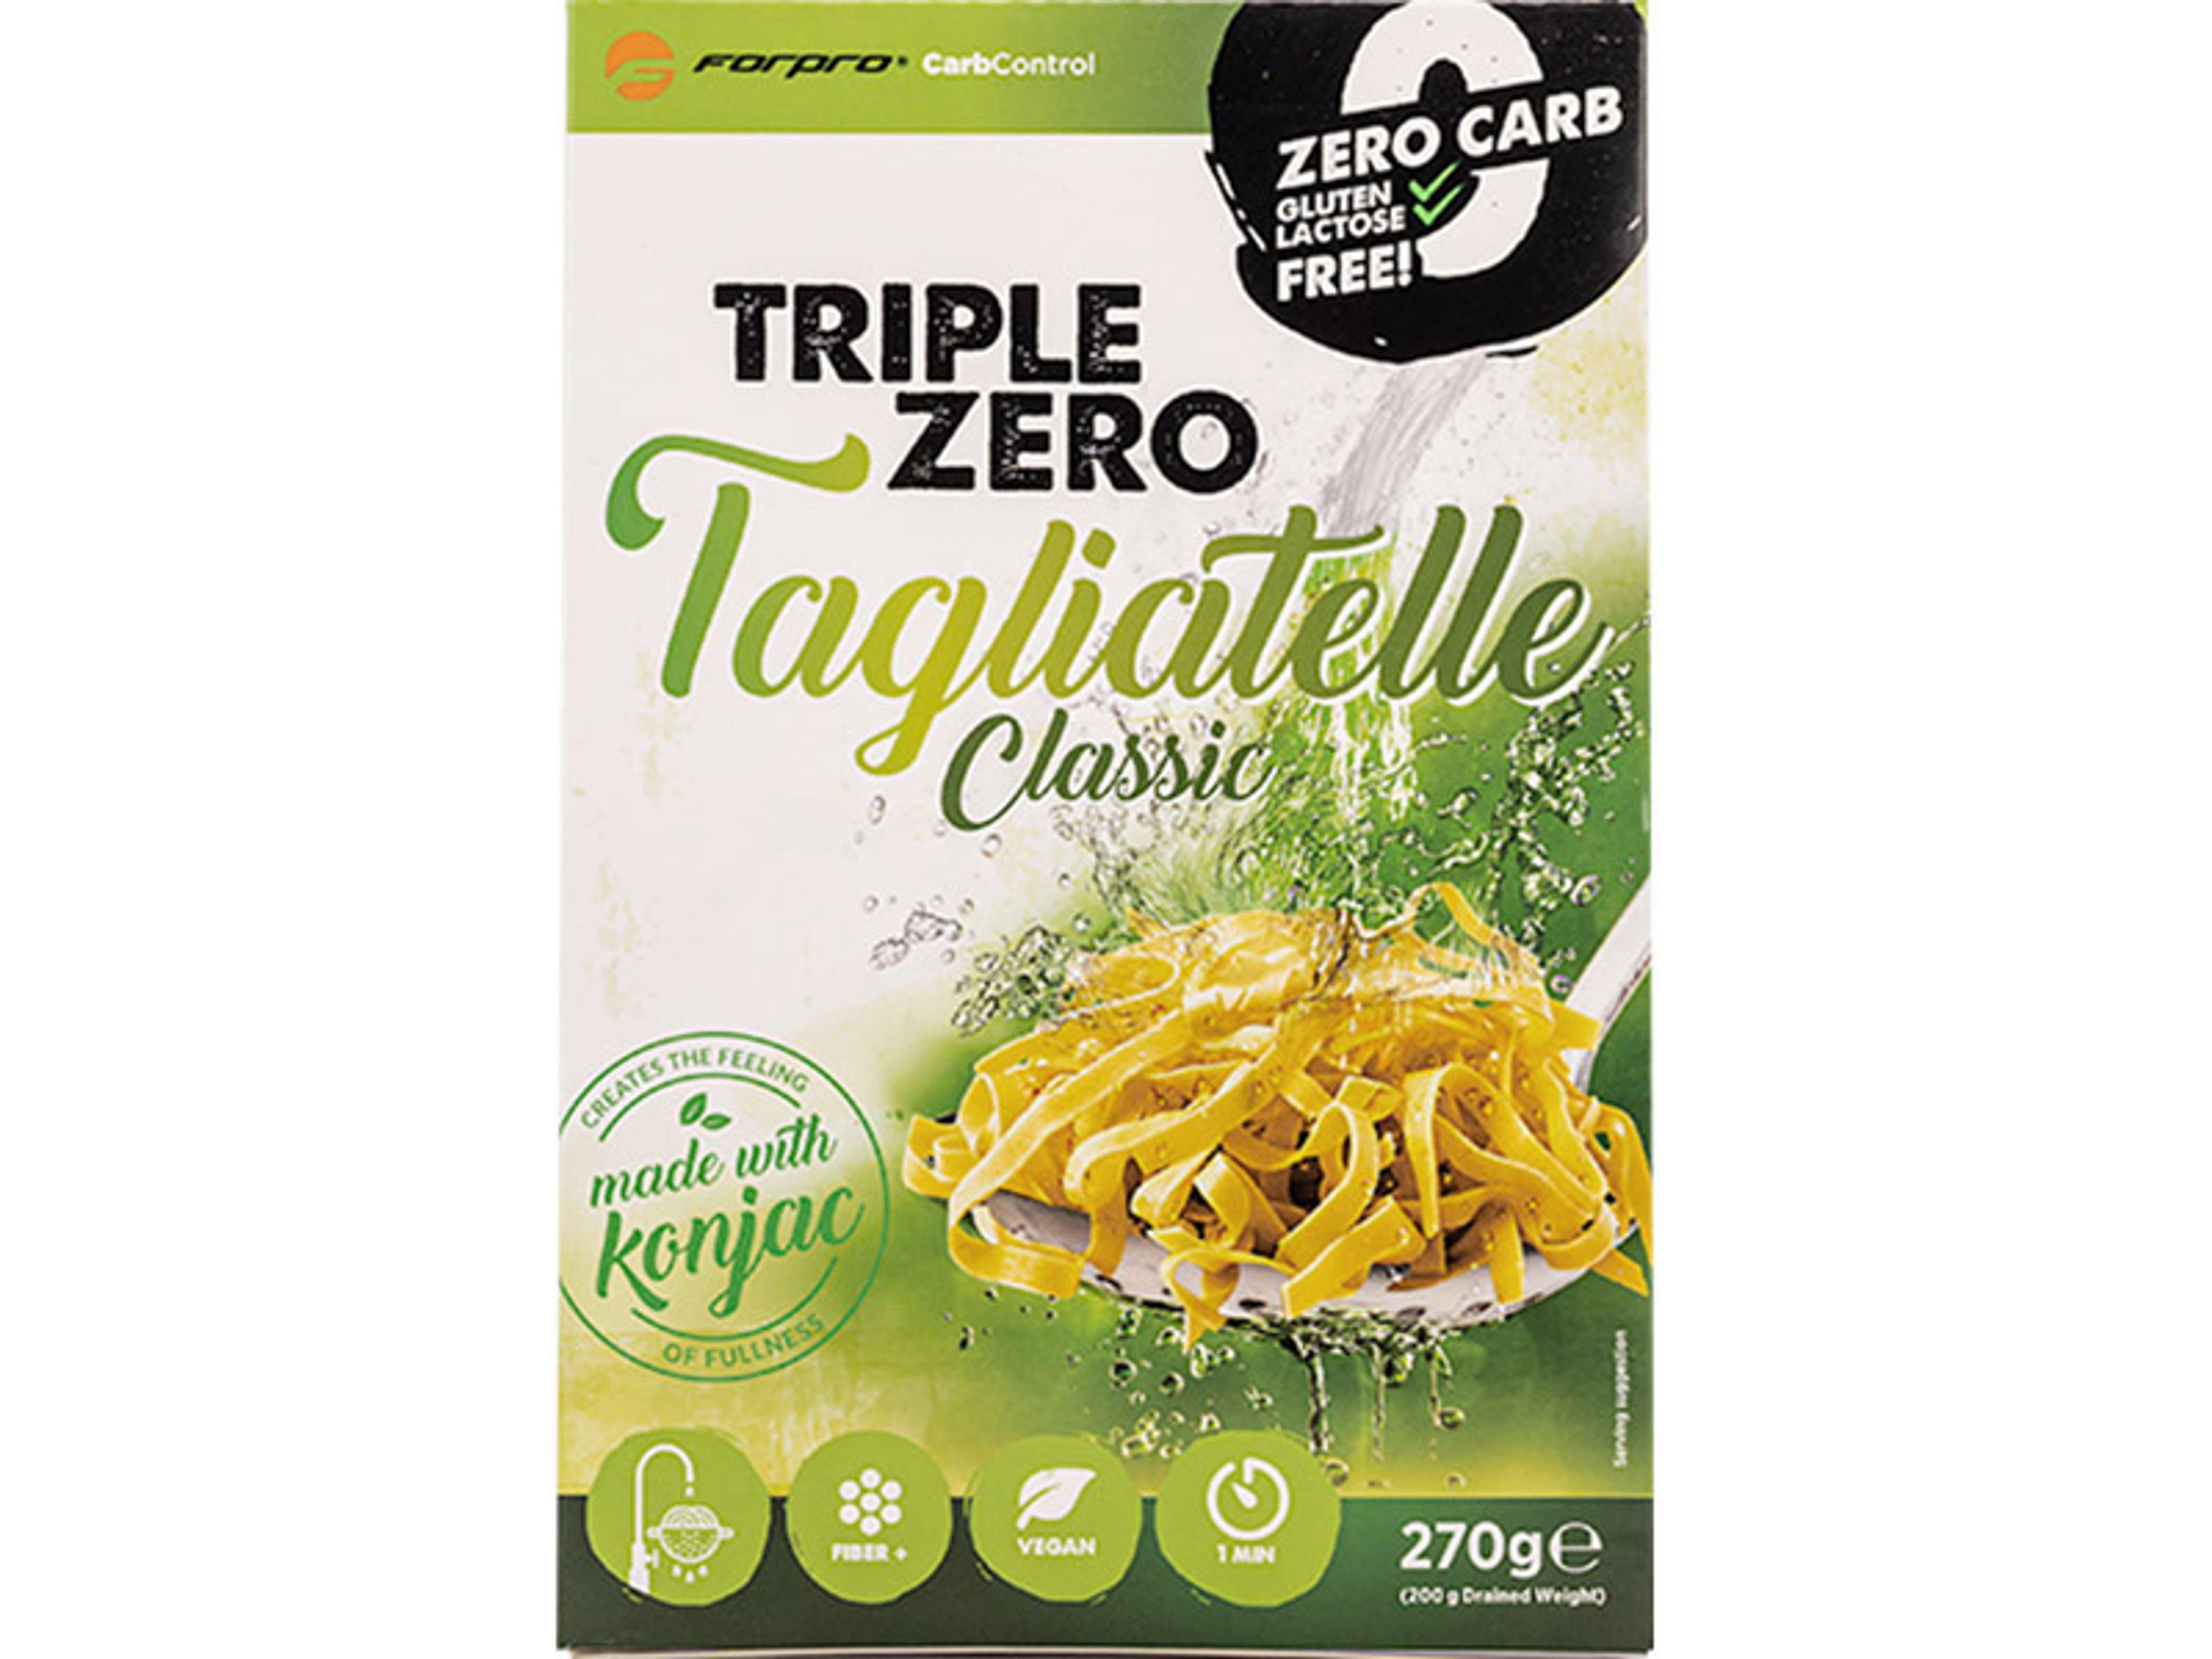 Forpro Carb Control Triple Zero Pasta Classic Tagliatelle - 270 g